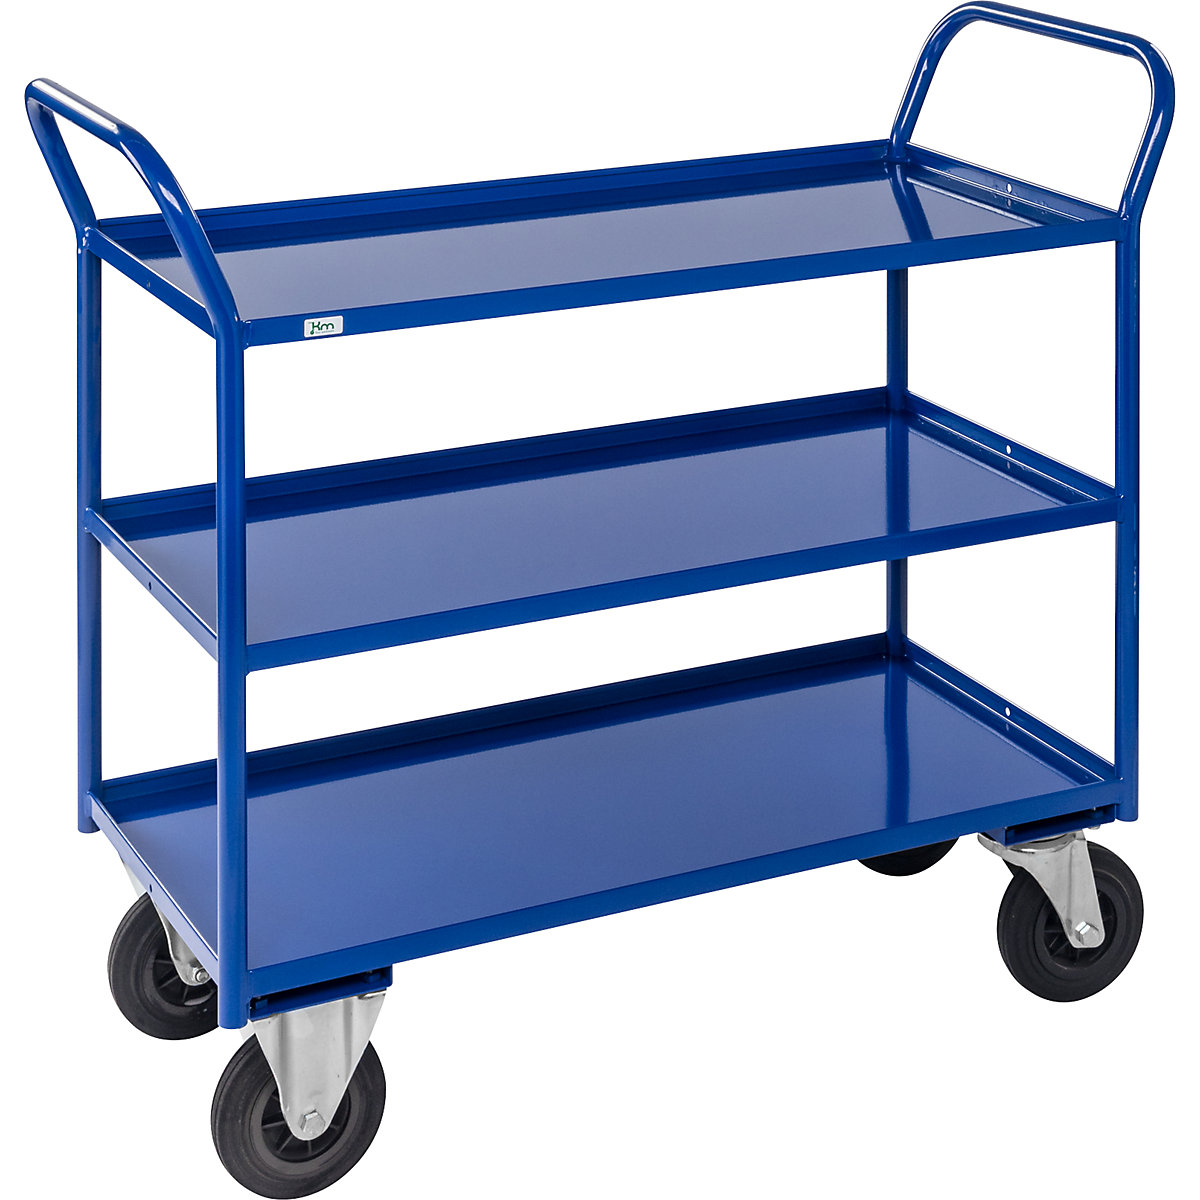 Stolový vozík KM41 – Kongamek, 3 etáže se zvýšenou hranou, d x š x v 1070 x 550 x 1000 mm, modrá, 2 otočná a 2 pevná kola, od 5 kusů-3